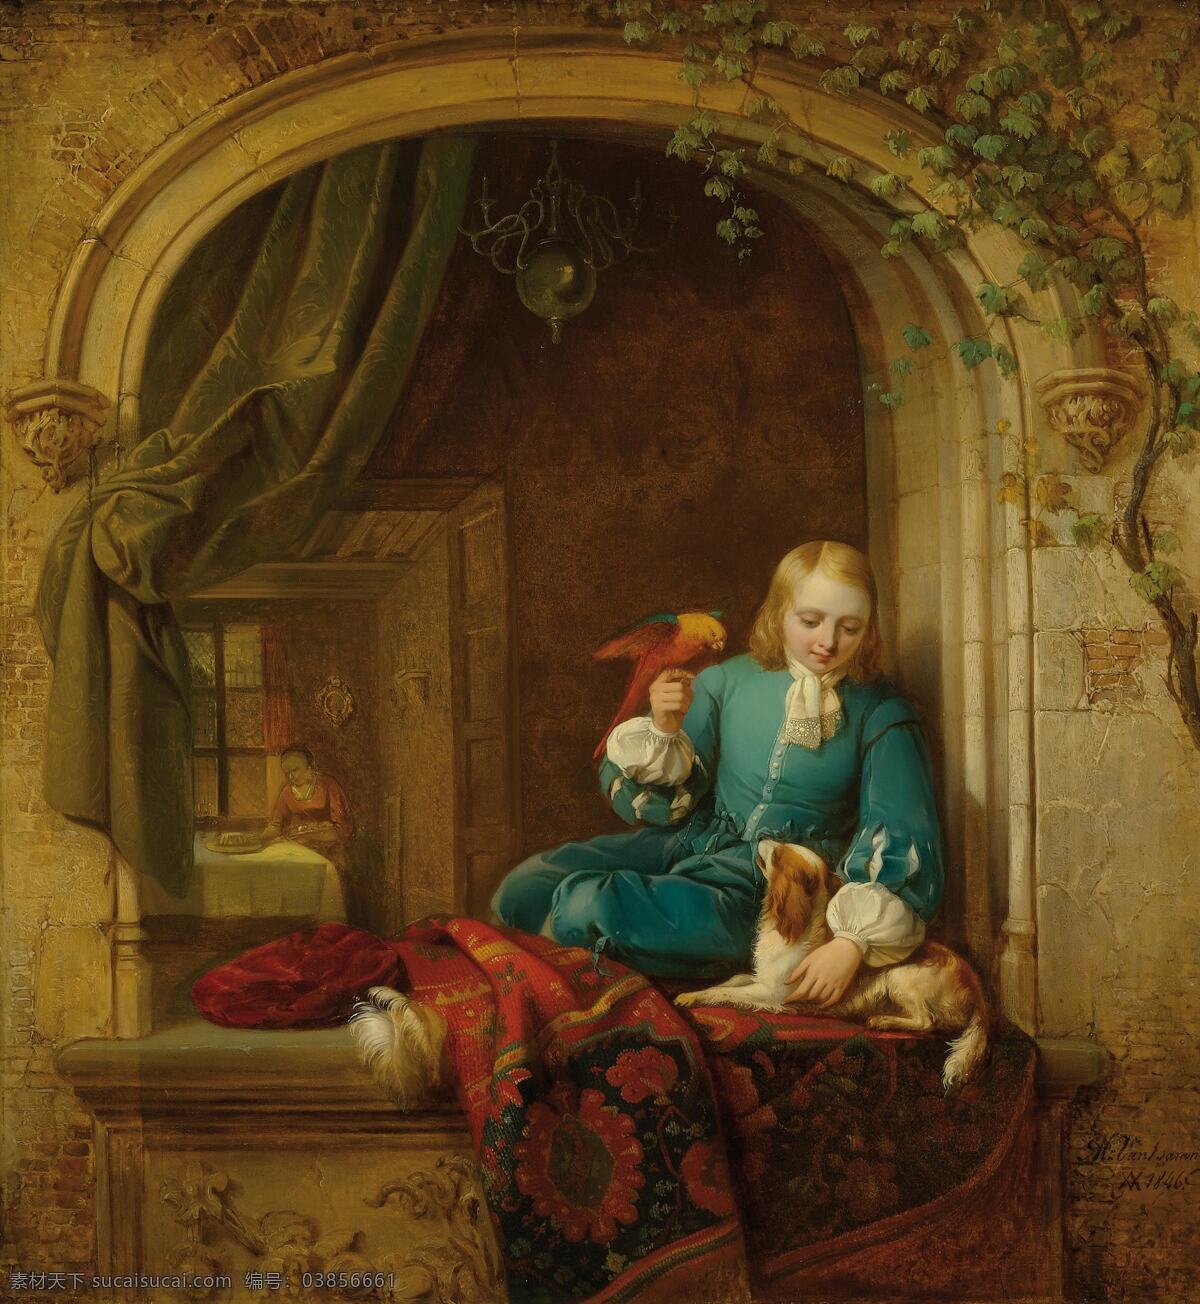 赫尔曼183 冯183 亚历克西斯 作品 德国画家 男孩儿 窗口 玩耍 鹦鹉 小狗 19世纪油画 油画 文化艺术 绘画书法